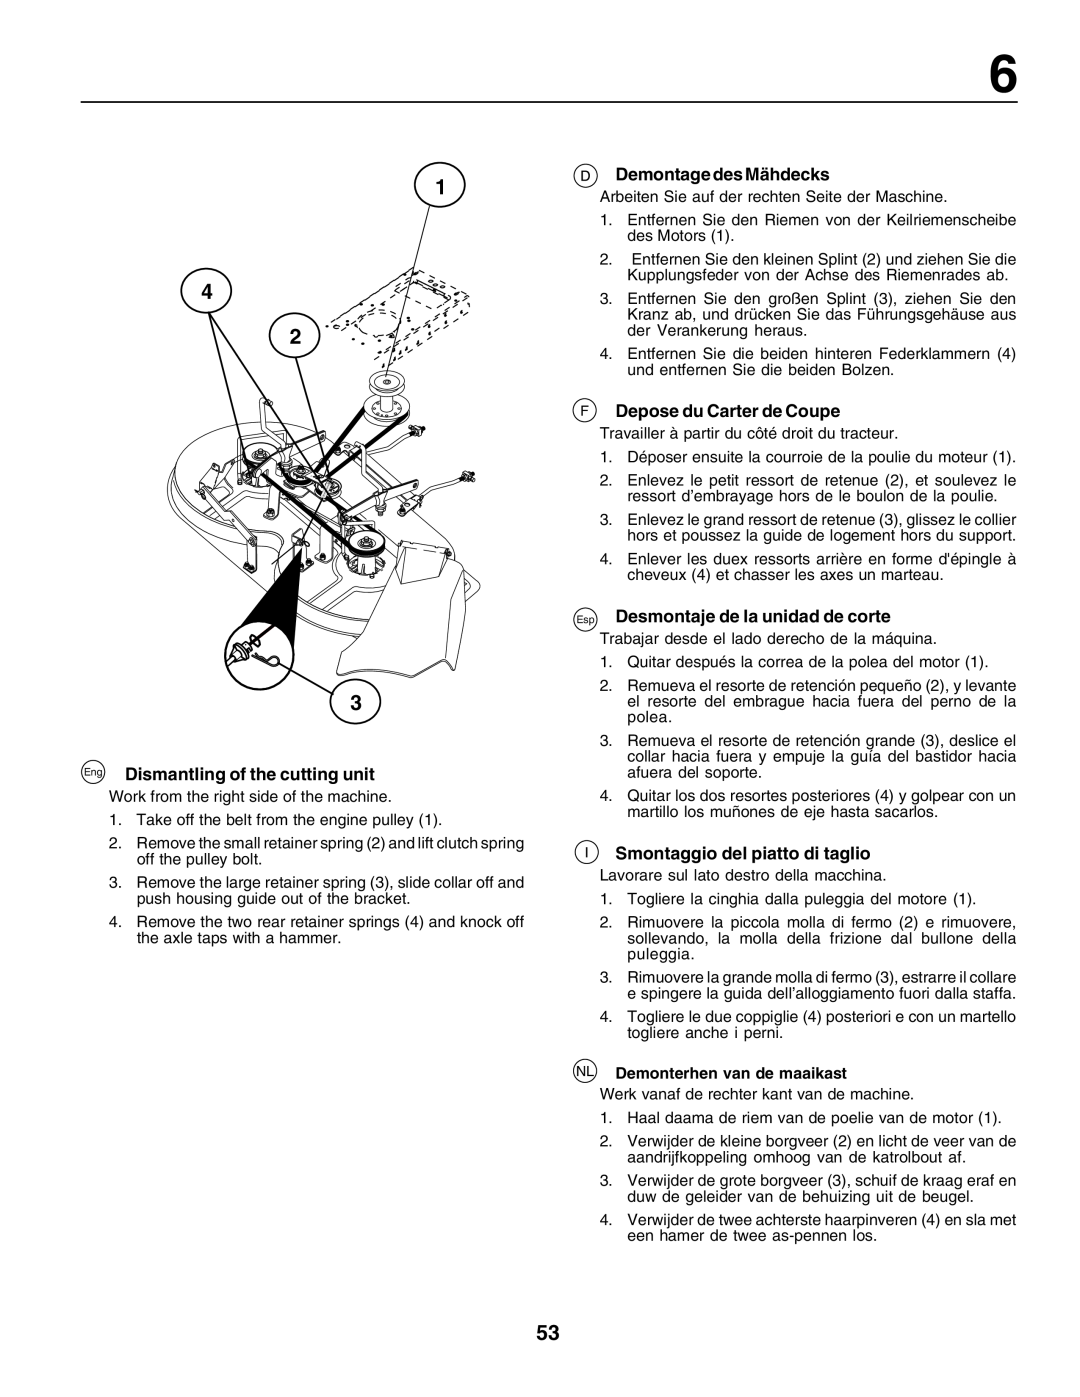 Husqvarna LT125 instruction manual Eng Dismantling of the cutting unit, Demontage des Mähdecks, F Depose du Carter de Coupe 